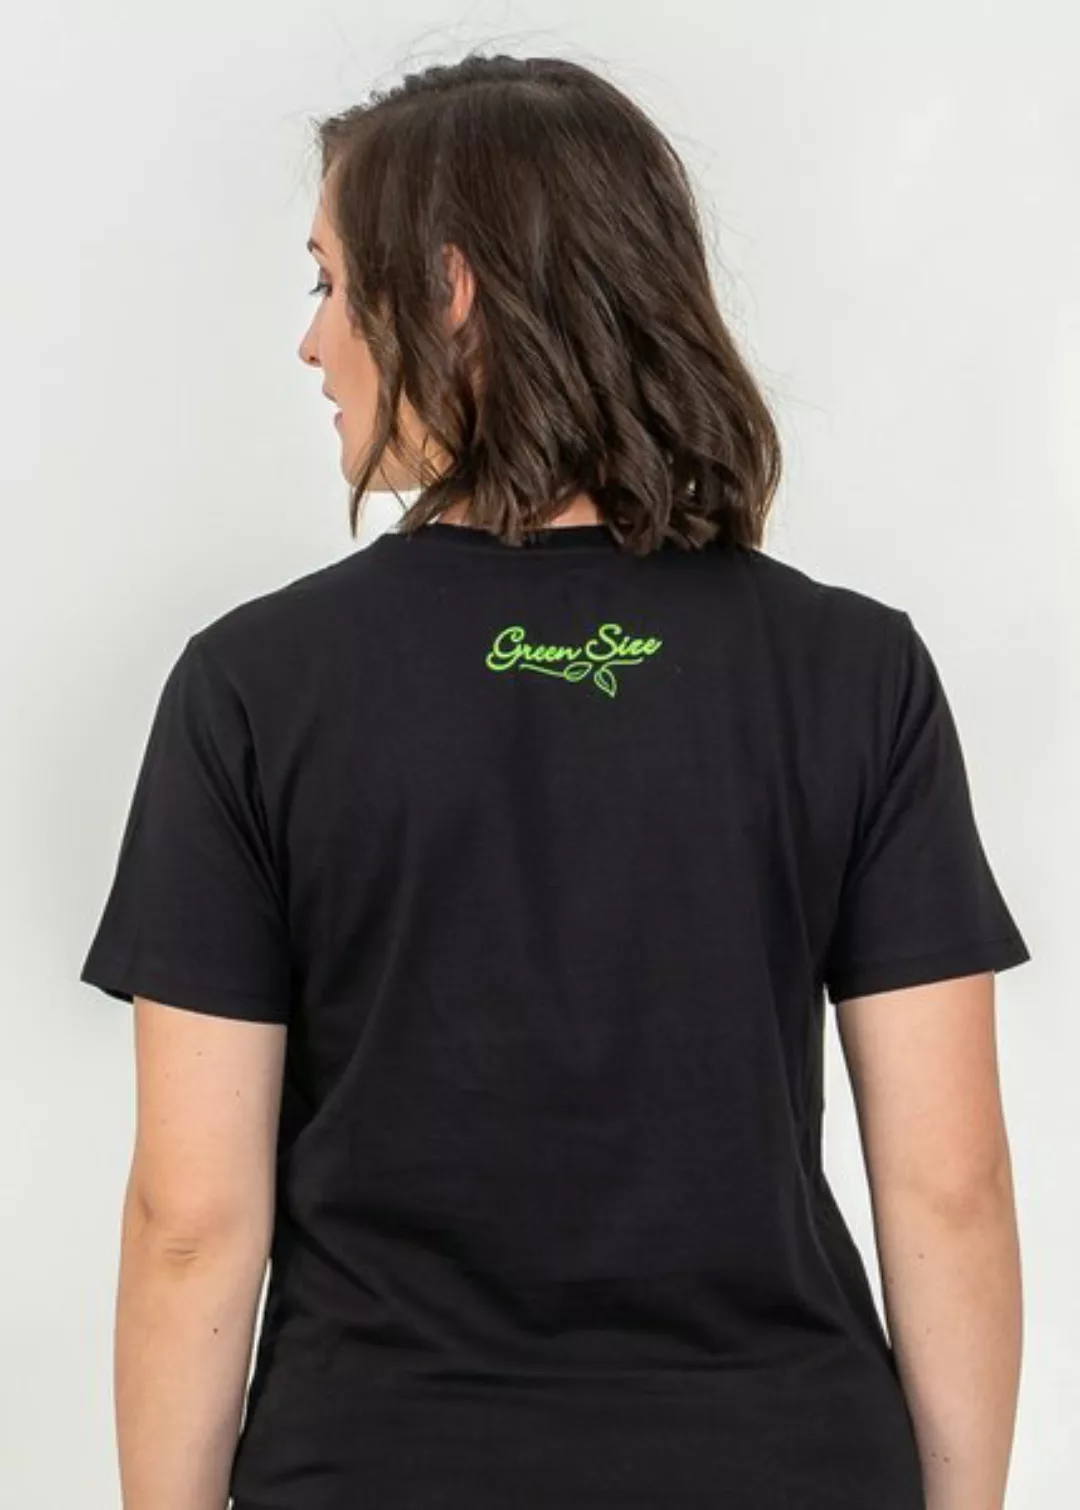 T-shirt Die Würde Des Menschen Ist Unantastbar günstig online kaufen